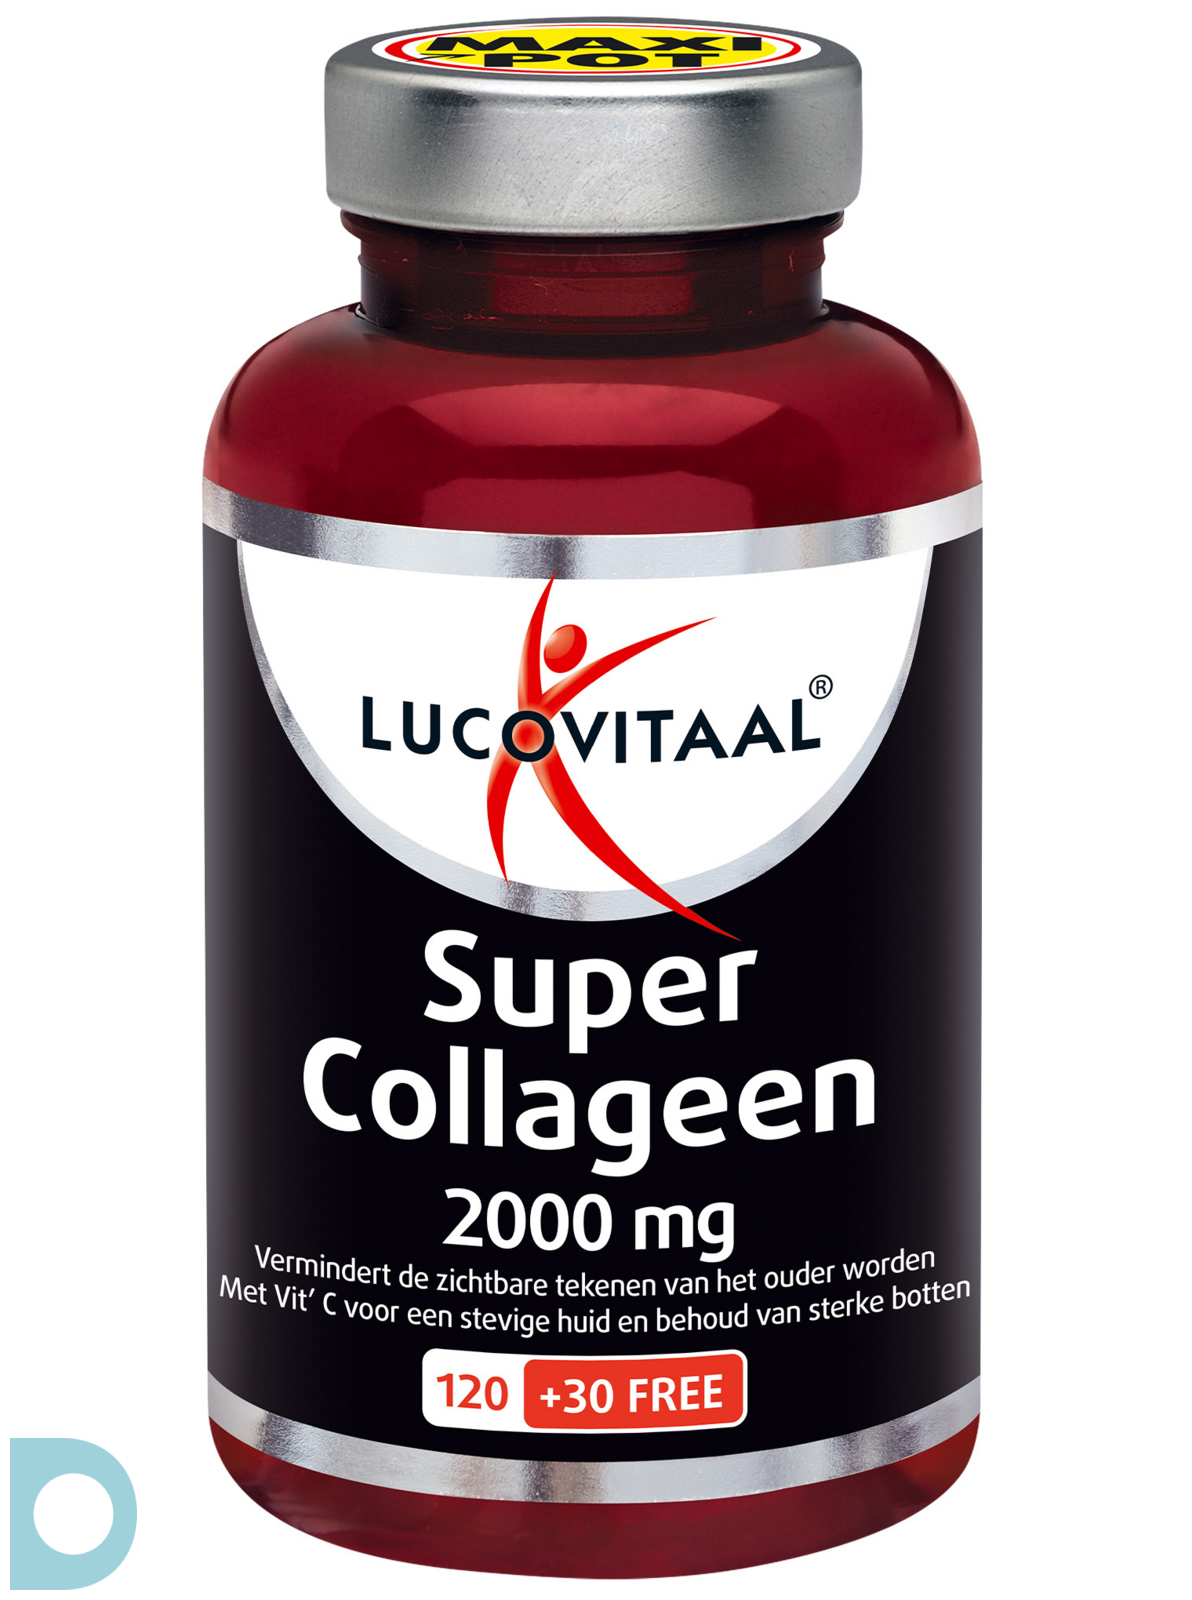 Beukende Plaats Grondwet Lucovitaal Super Collageen 2000 mg Tabletten 120TB | De Online Drogist